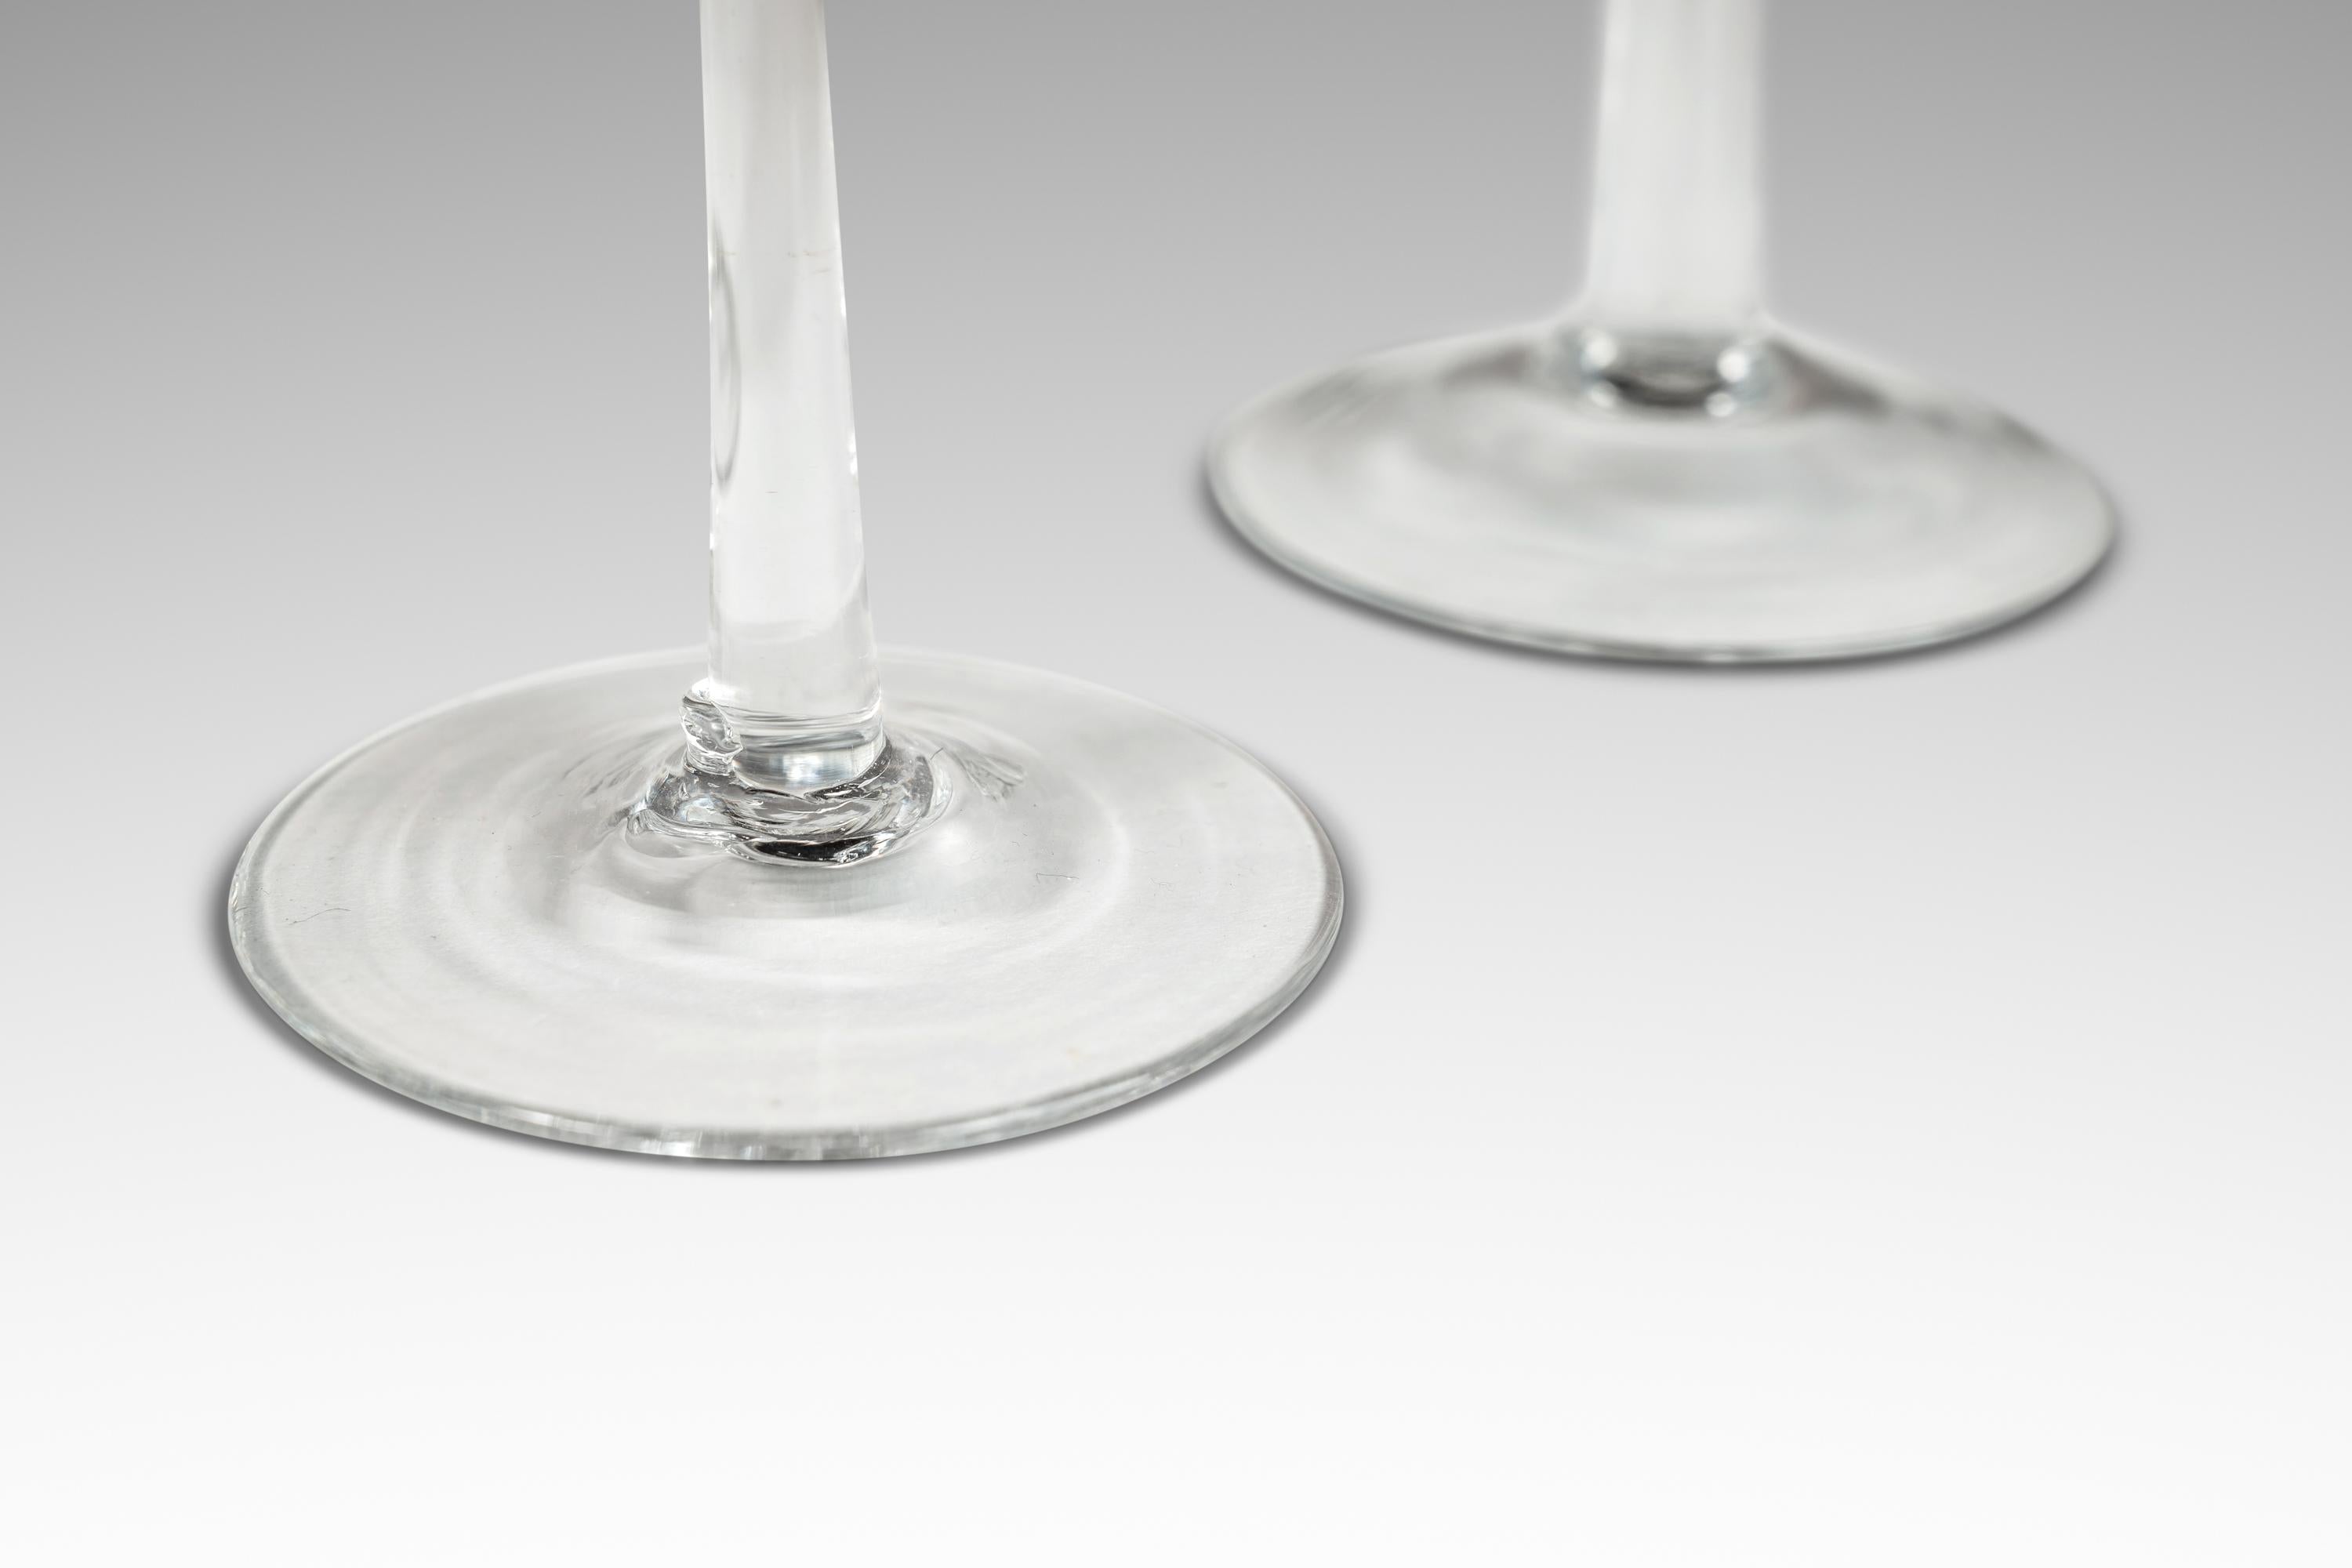 Wir präsentieren ein kunstvoll gefertigtes Set aus vier mundgeblasenen Glaskerzenhaltern der italienischen Moderne. Wie bei Schneeflocken gleicht keine der anderen und jede ist in Größe und Form leicht unterschiedlich. Die eleganten, langgestreckten